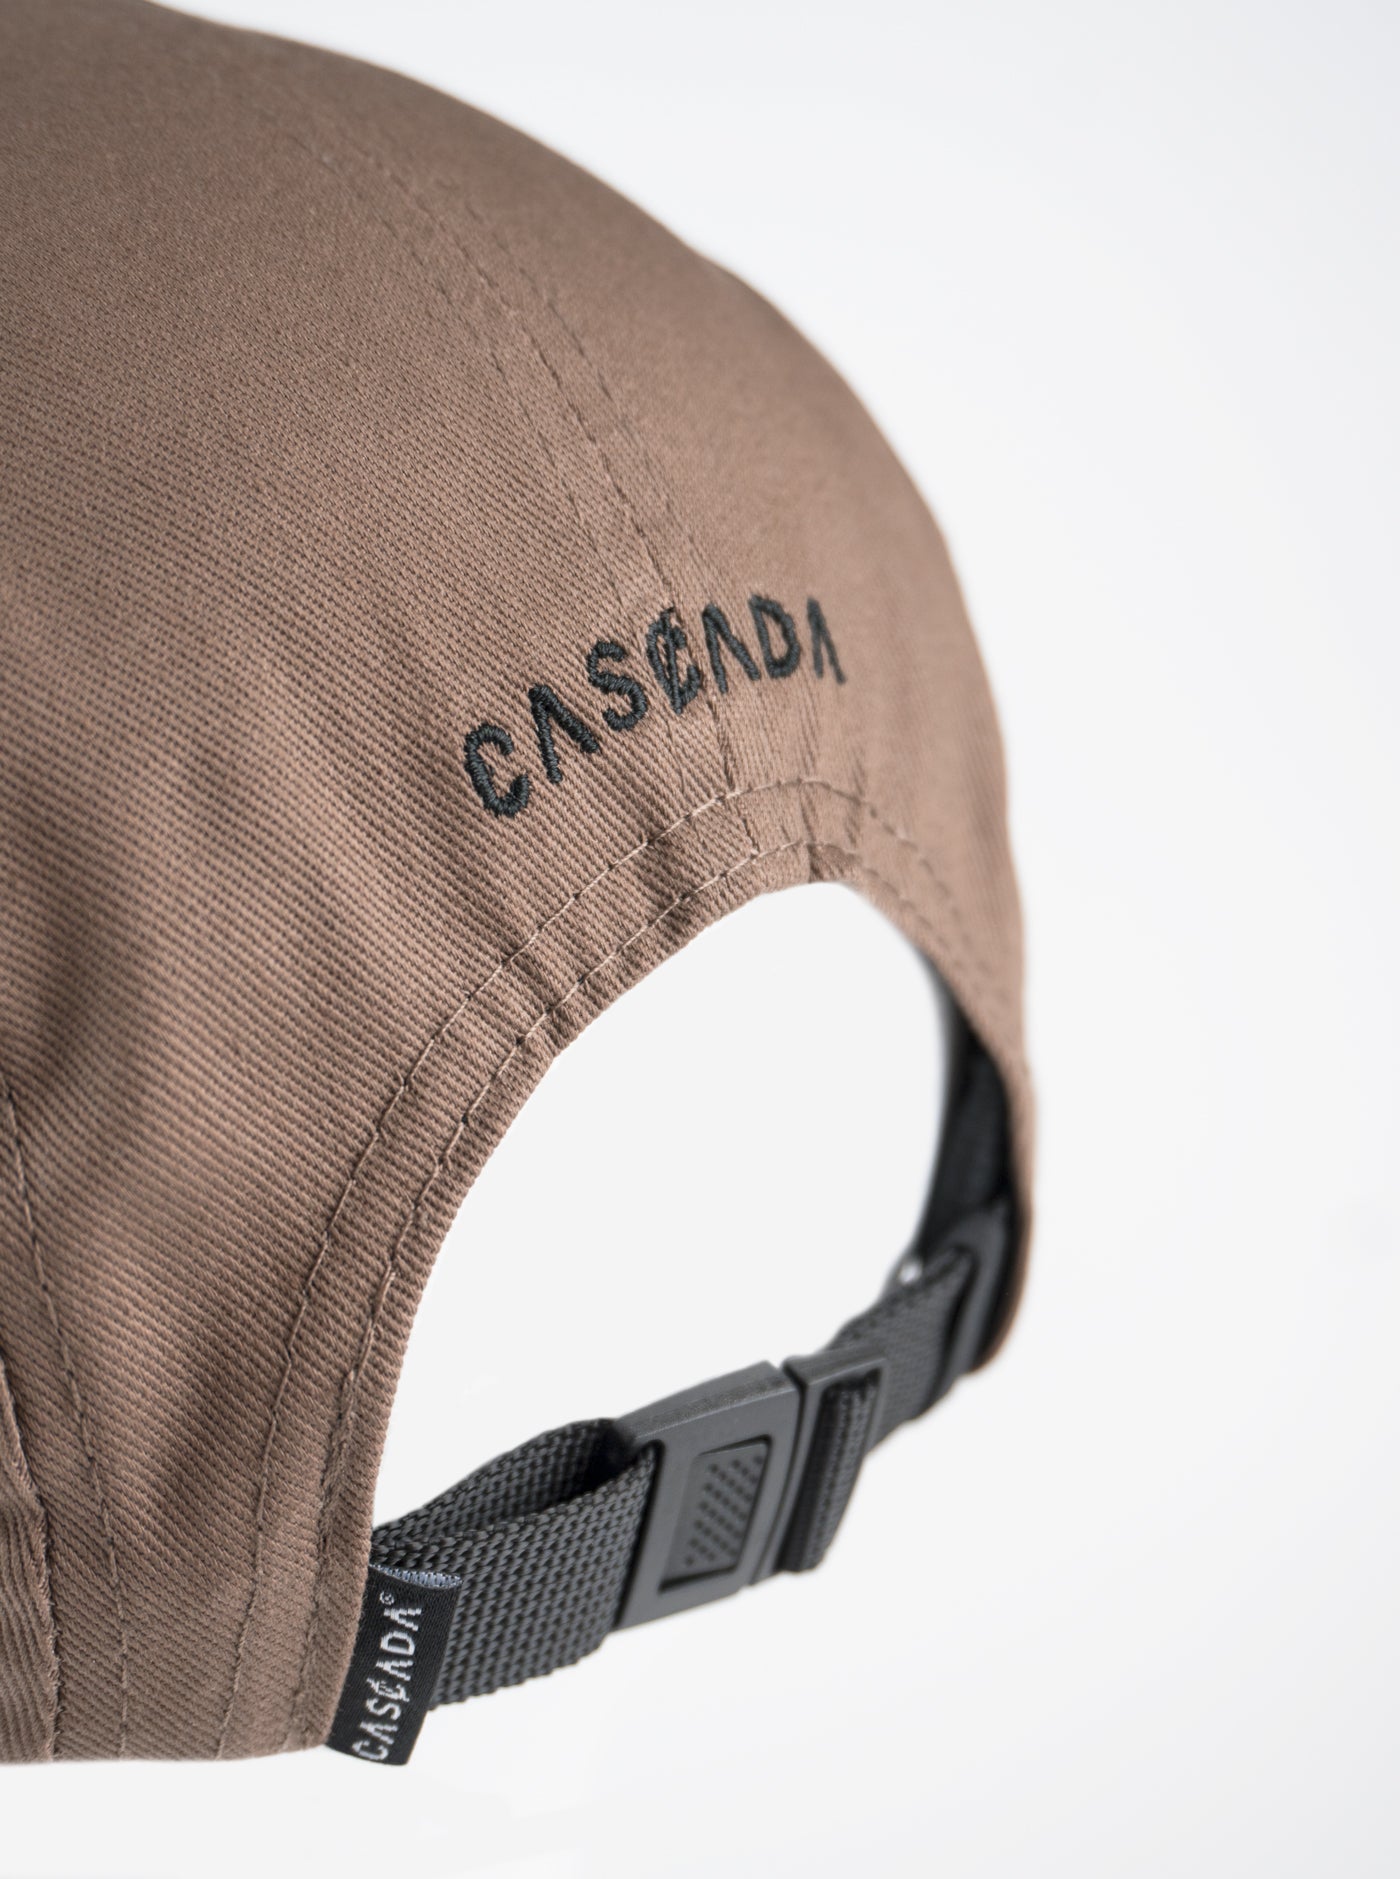 Cotton Camper Hat - Cedar Brown